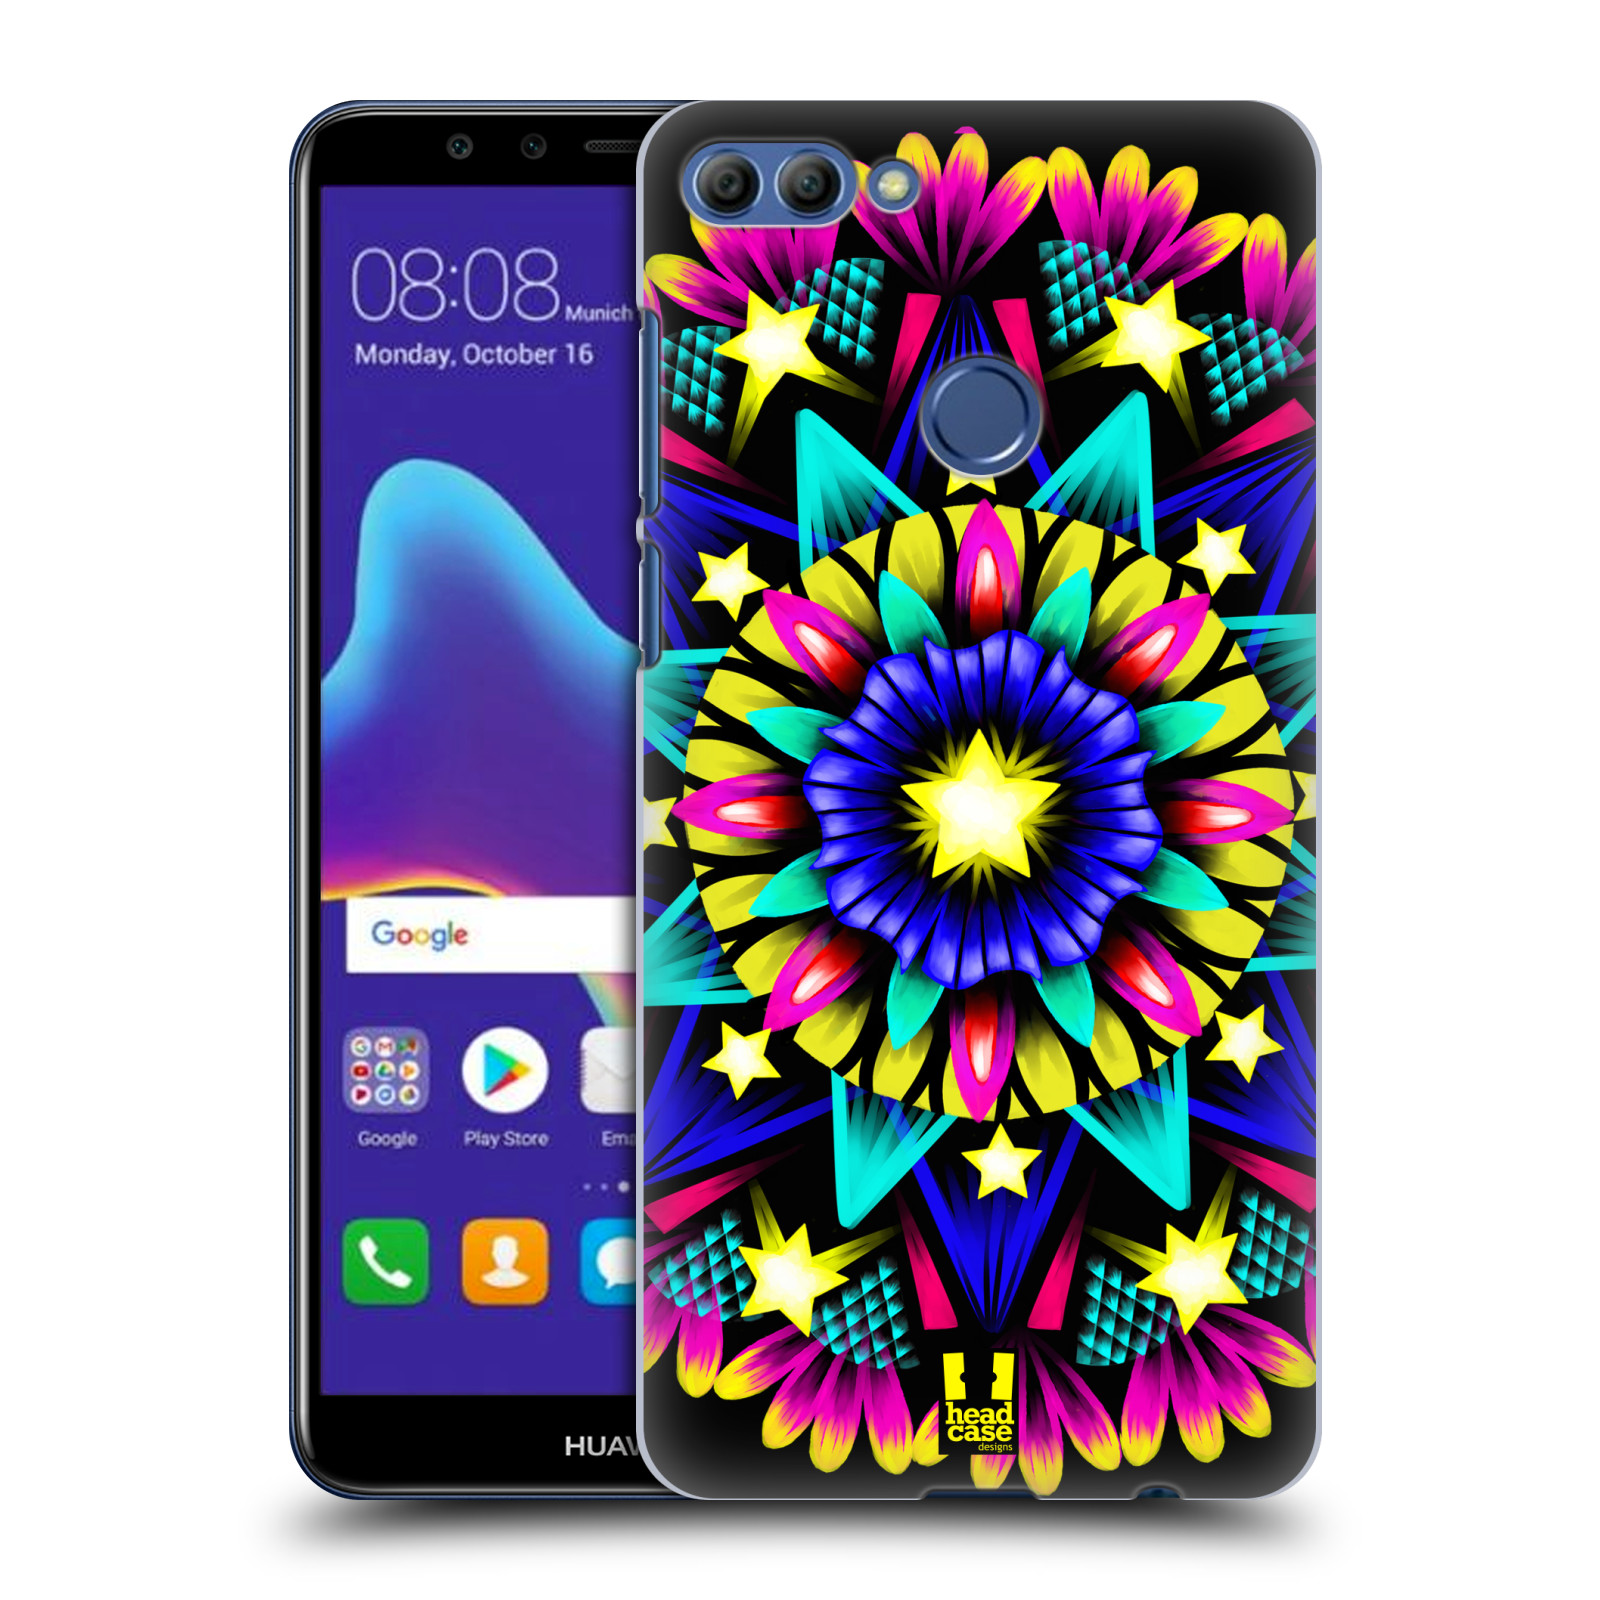 HEAD CASE plastový obal na mobil Huawei Y9 2018 vzor Indie Mandala kaleidoskop barevný vzor HVĚZDA